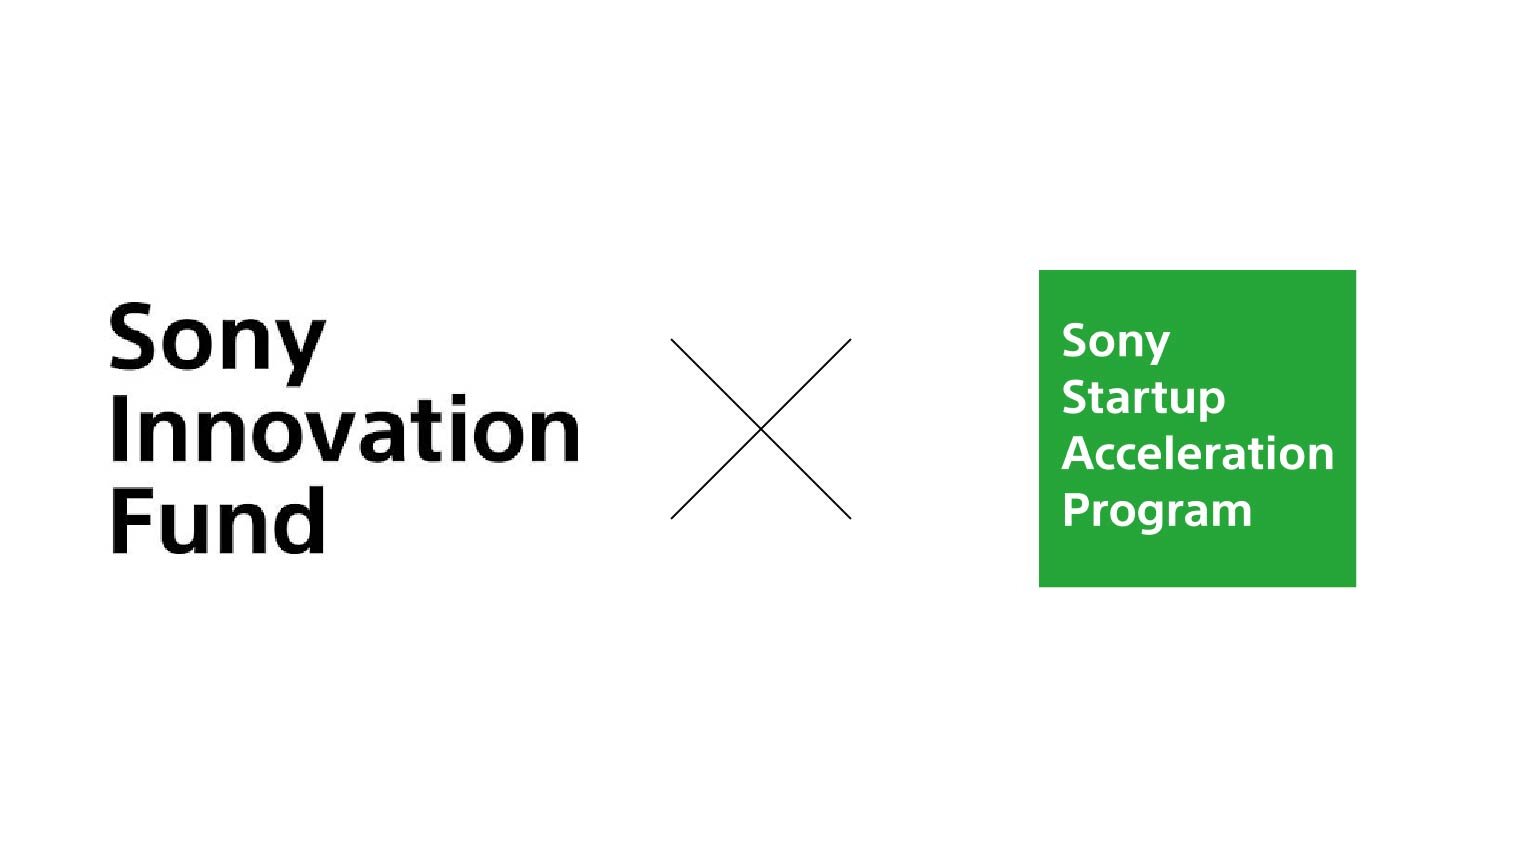 Sony Innovation FundとSony Startup Acceleration Programが協業し、スタートアップ企業への支援を拡充